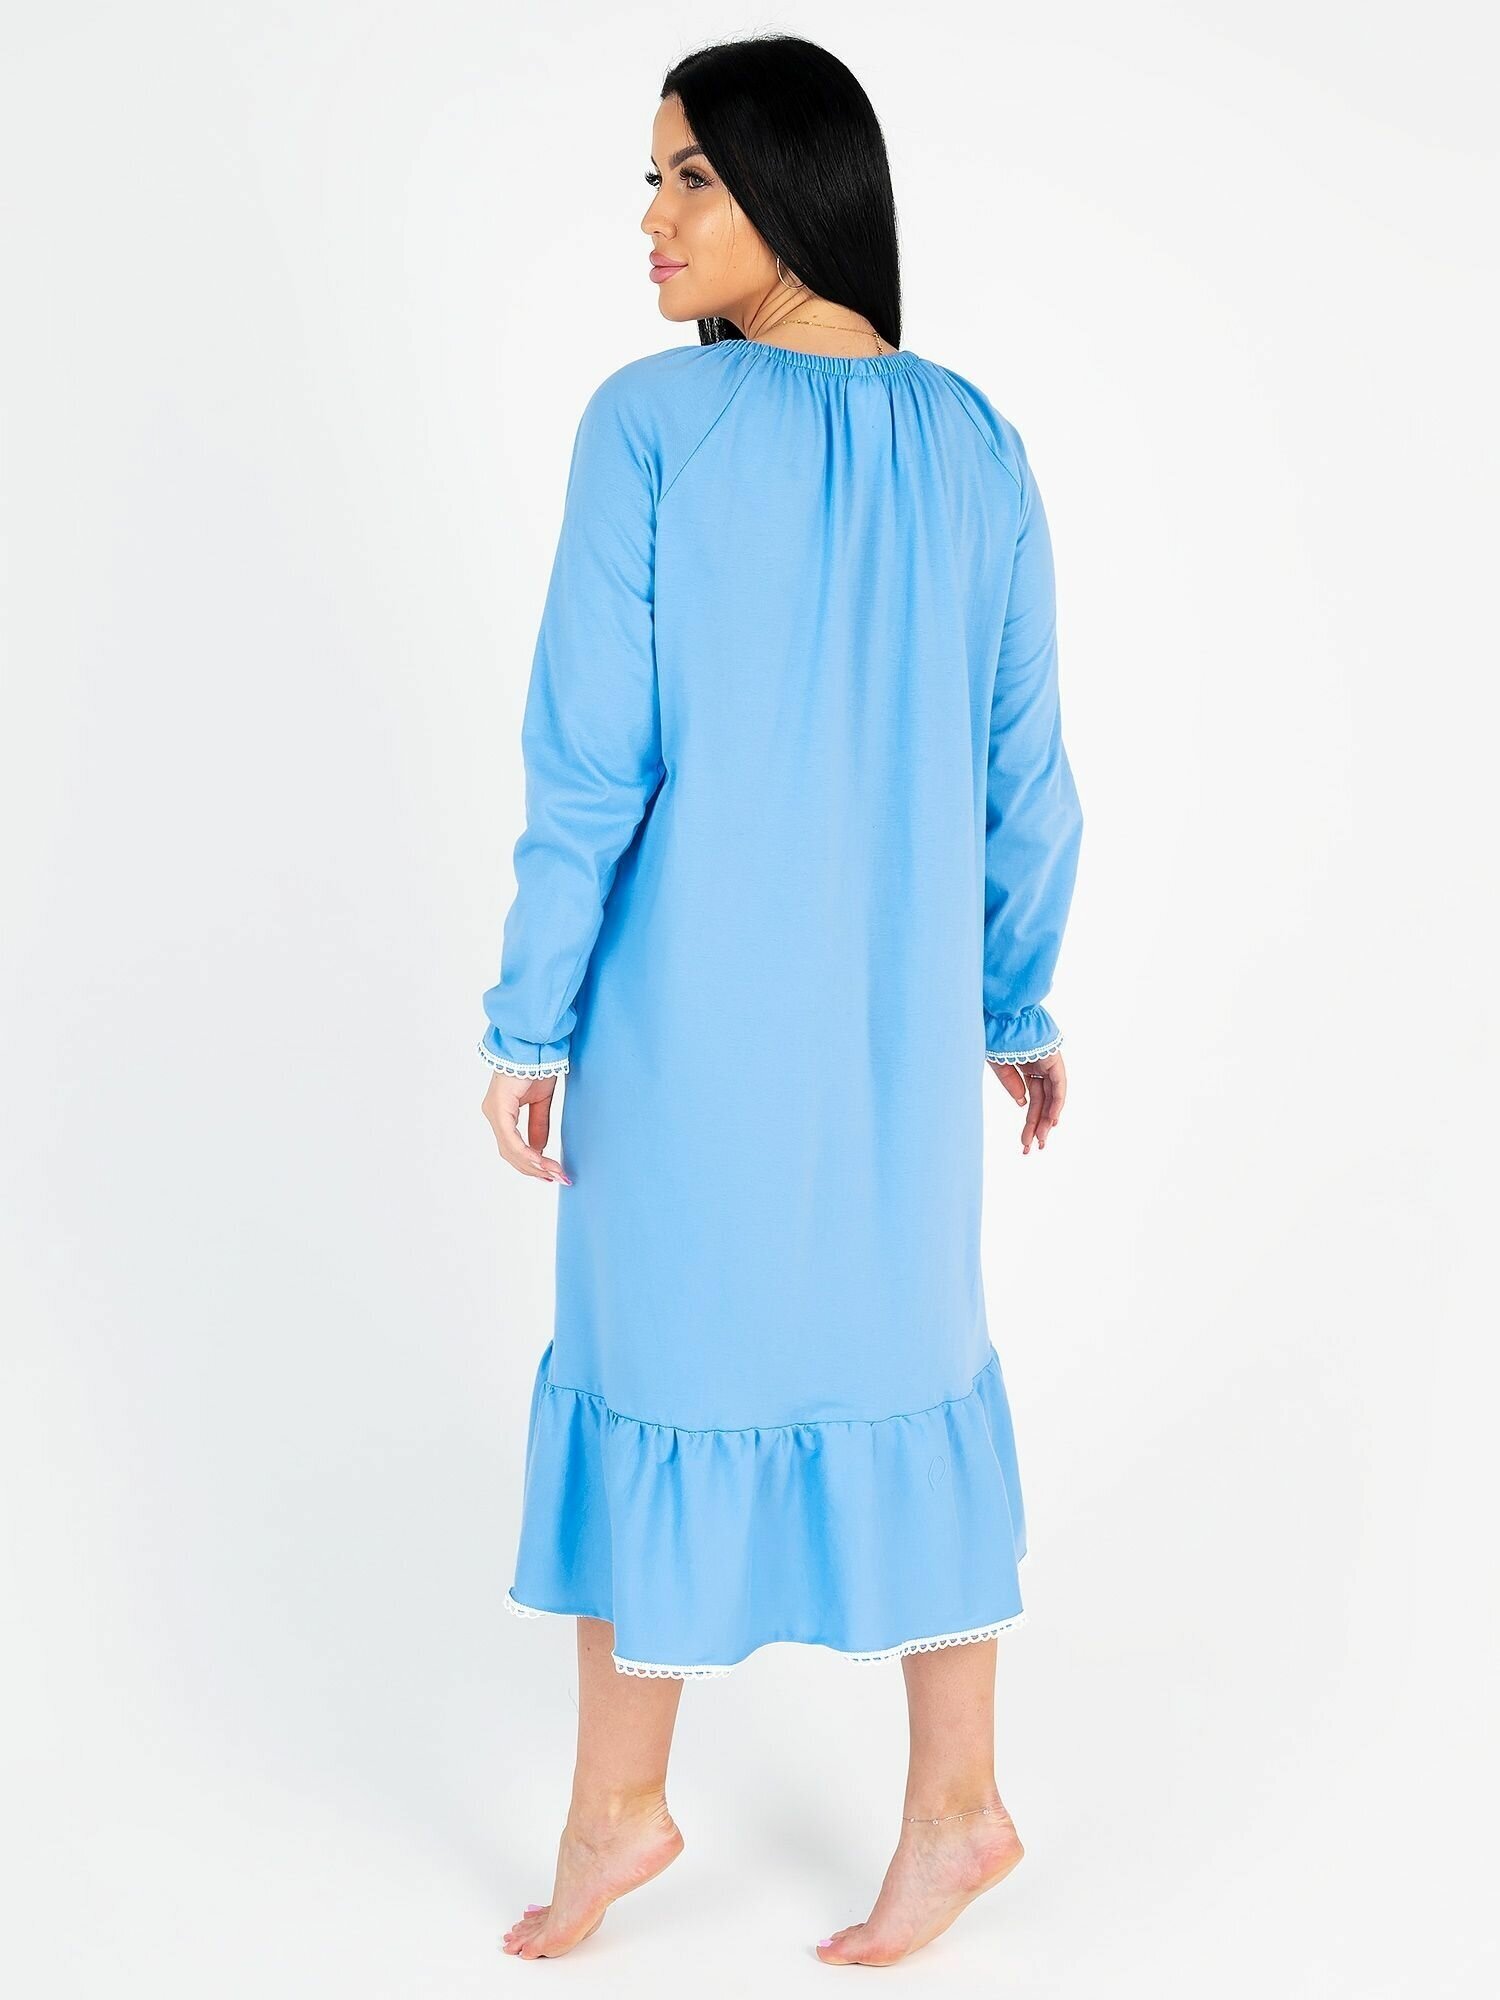 Сорочка ночная женская (46 размер) - фотография № 12